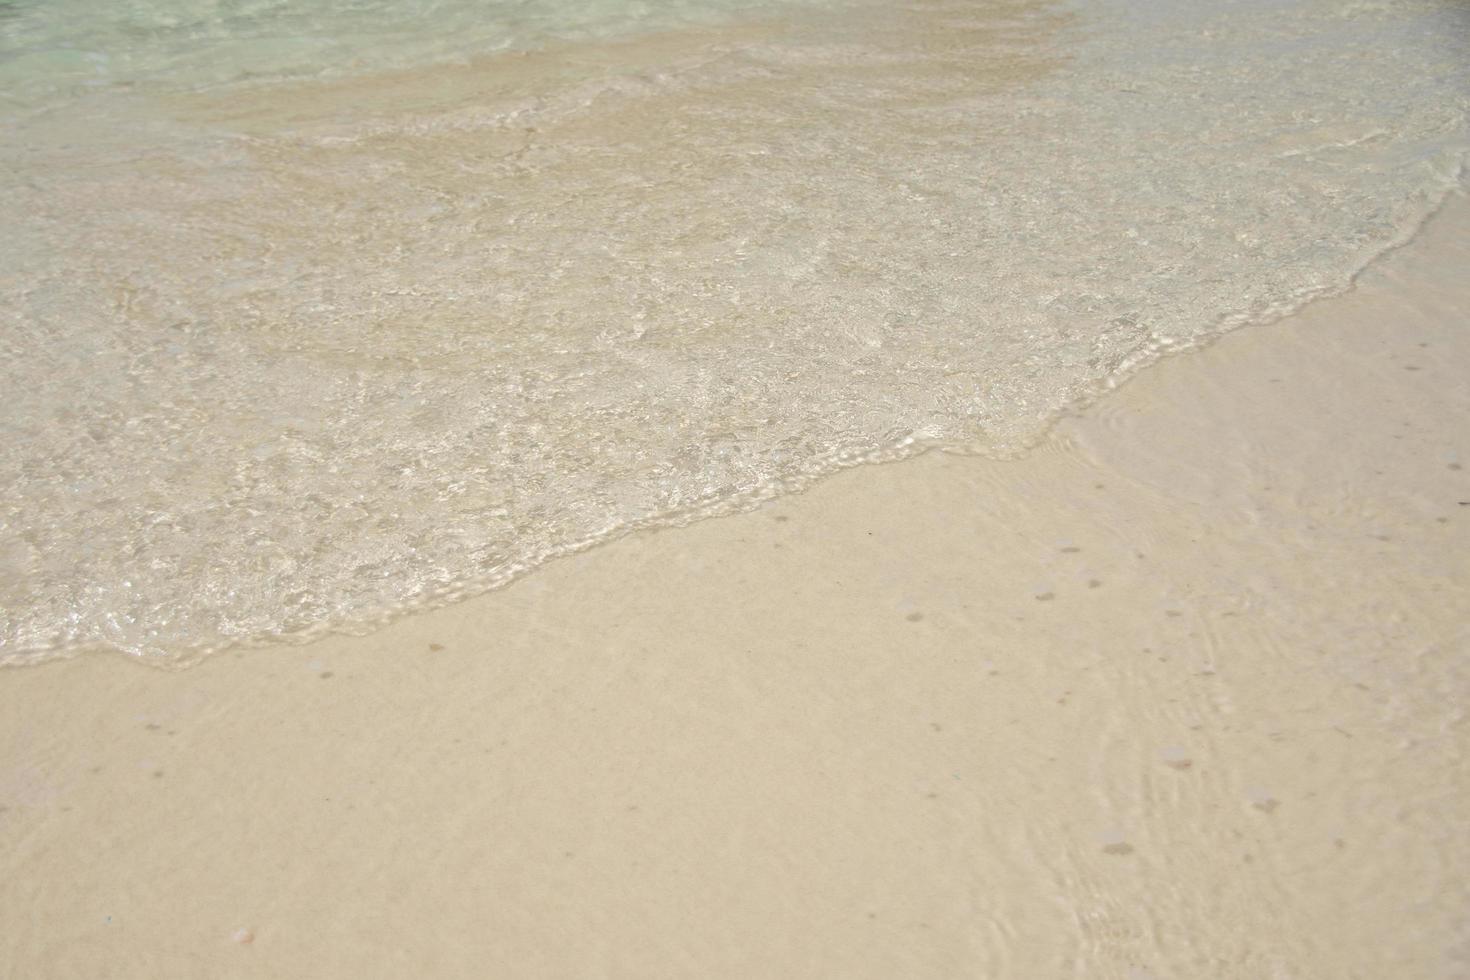 bella onda morbida sulla sabbia al mare giornata di sole foto